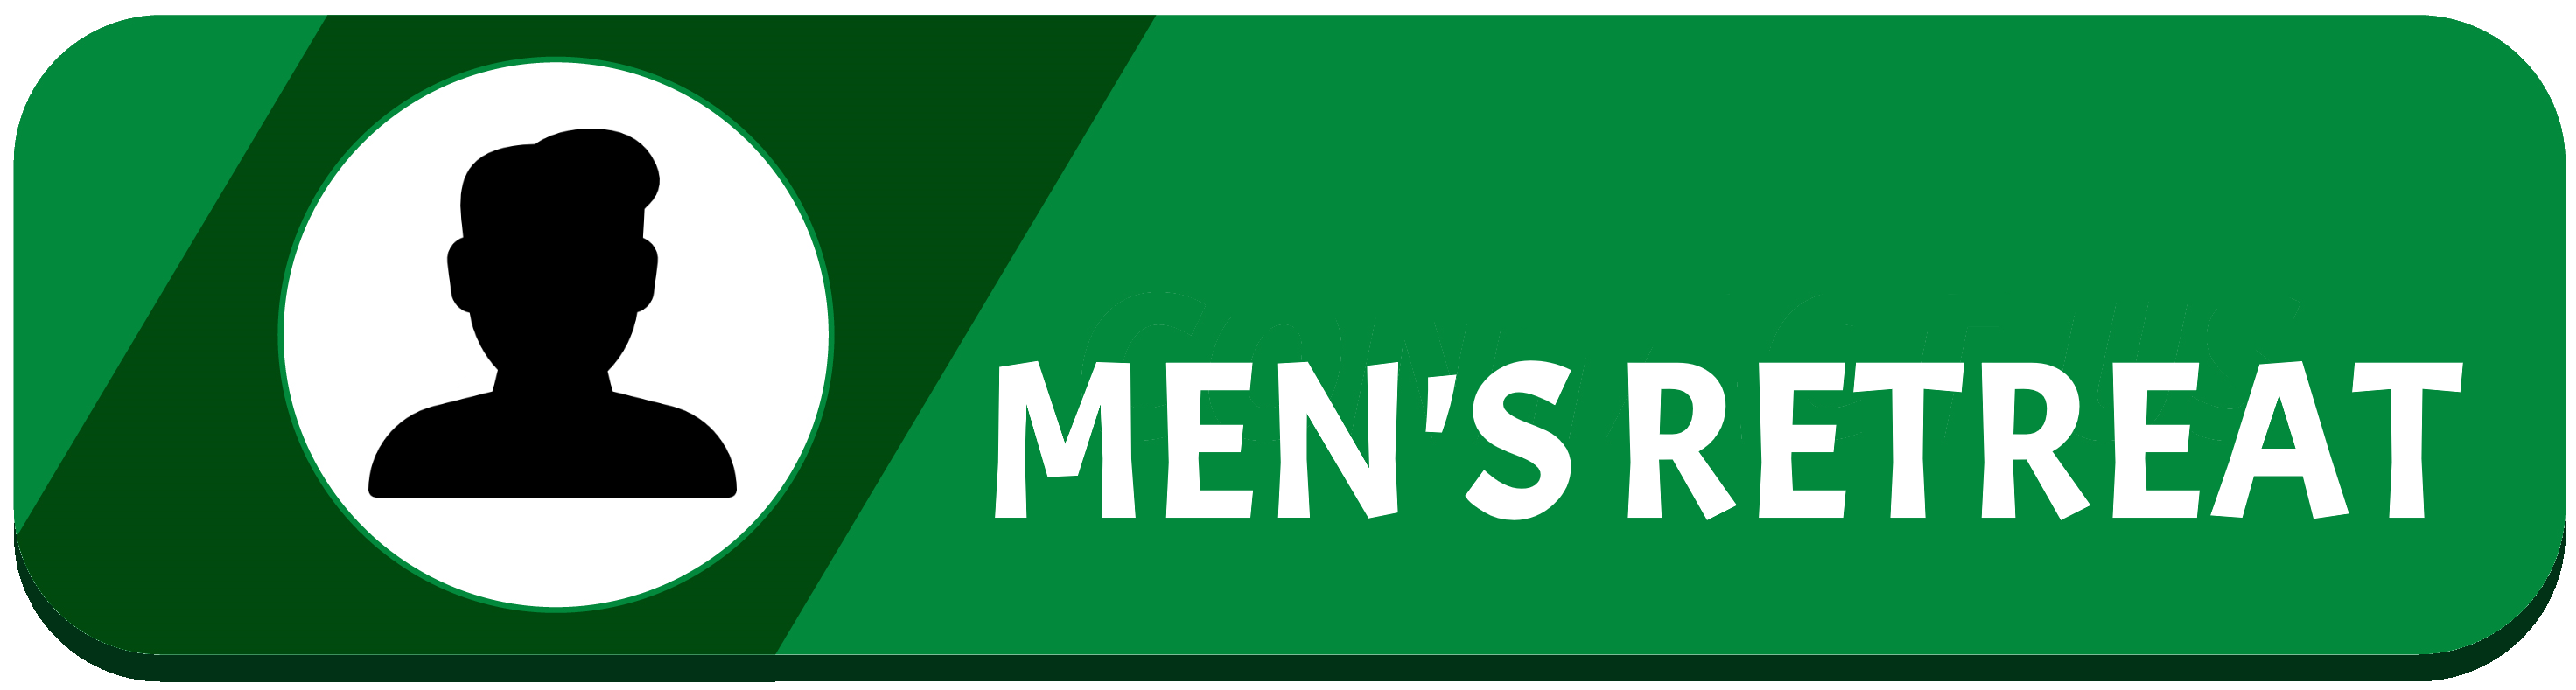 Men's Retreat Button